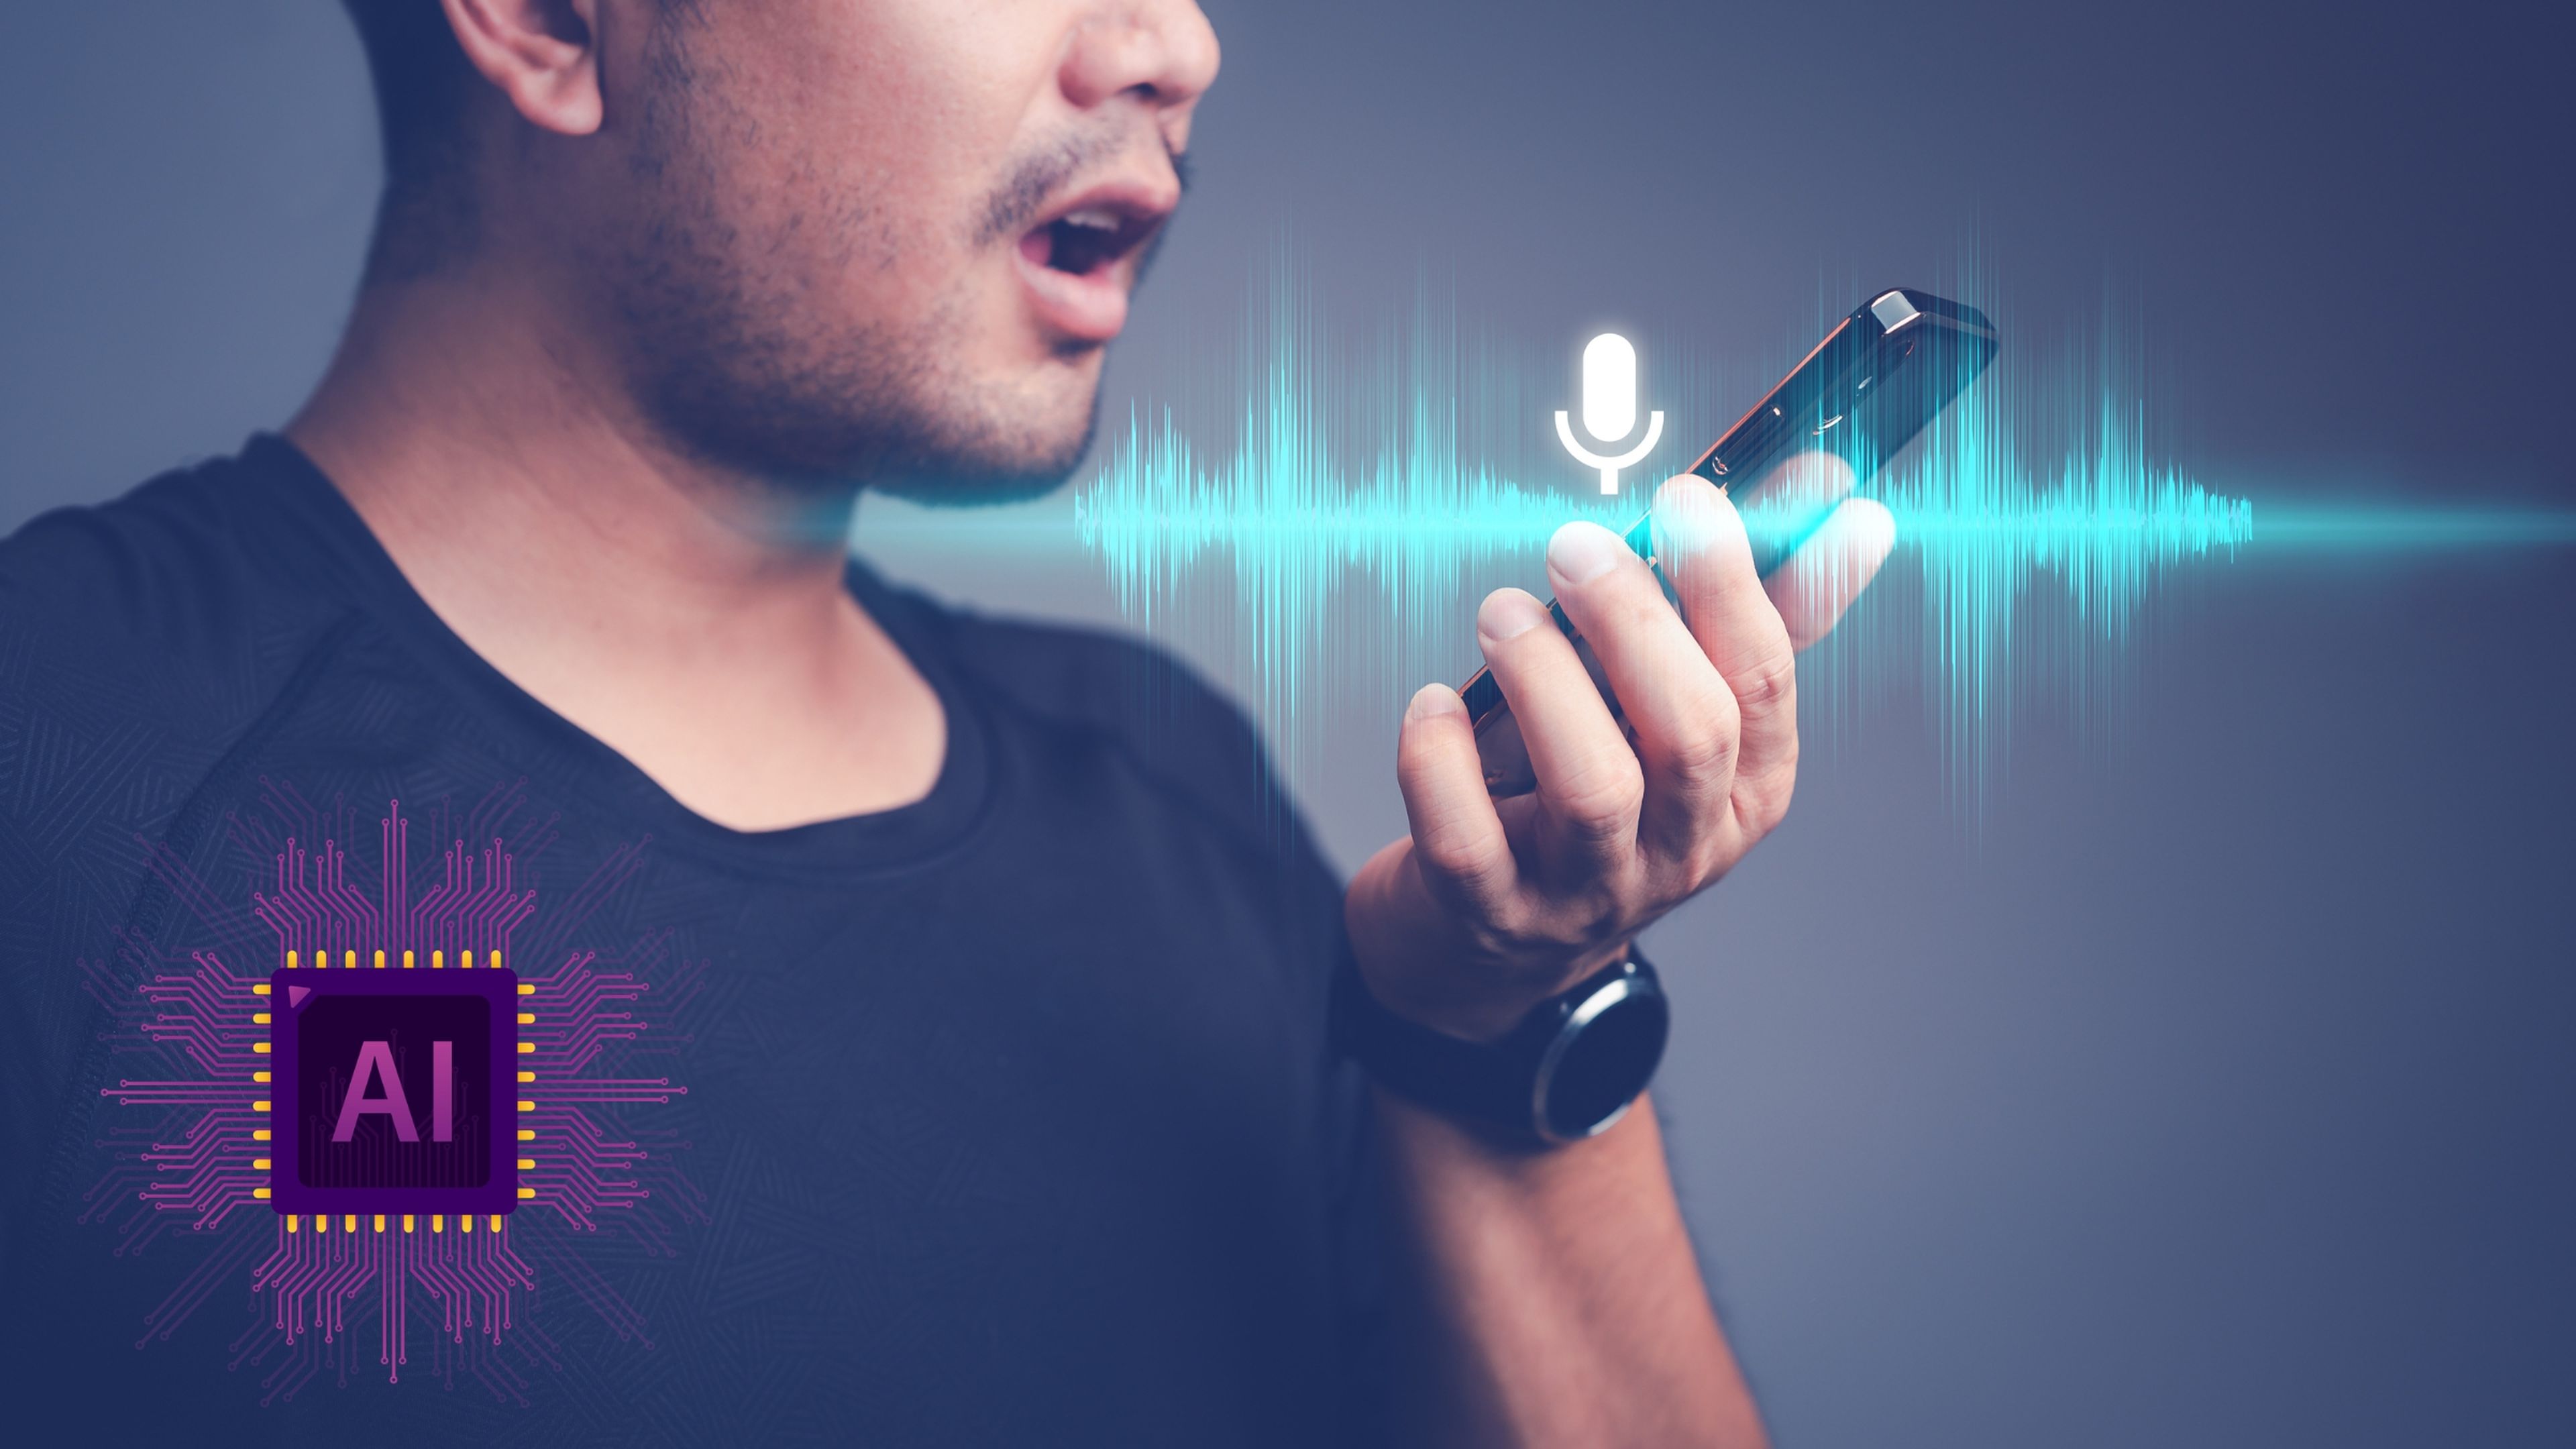 Cómo funciona FakeYou: manda audios con voces de famosos creadas por IA